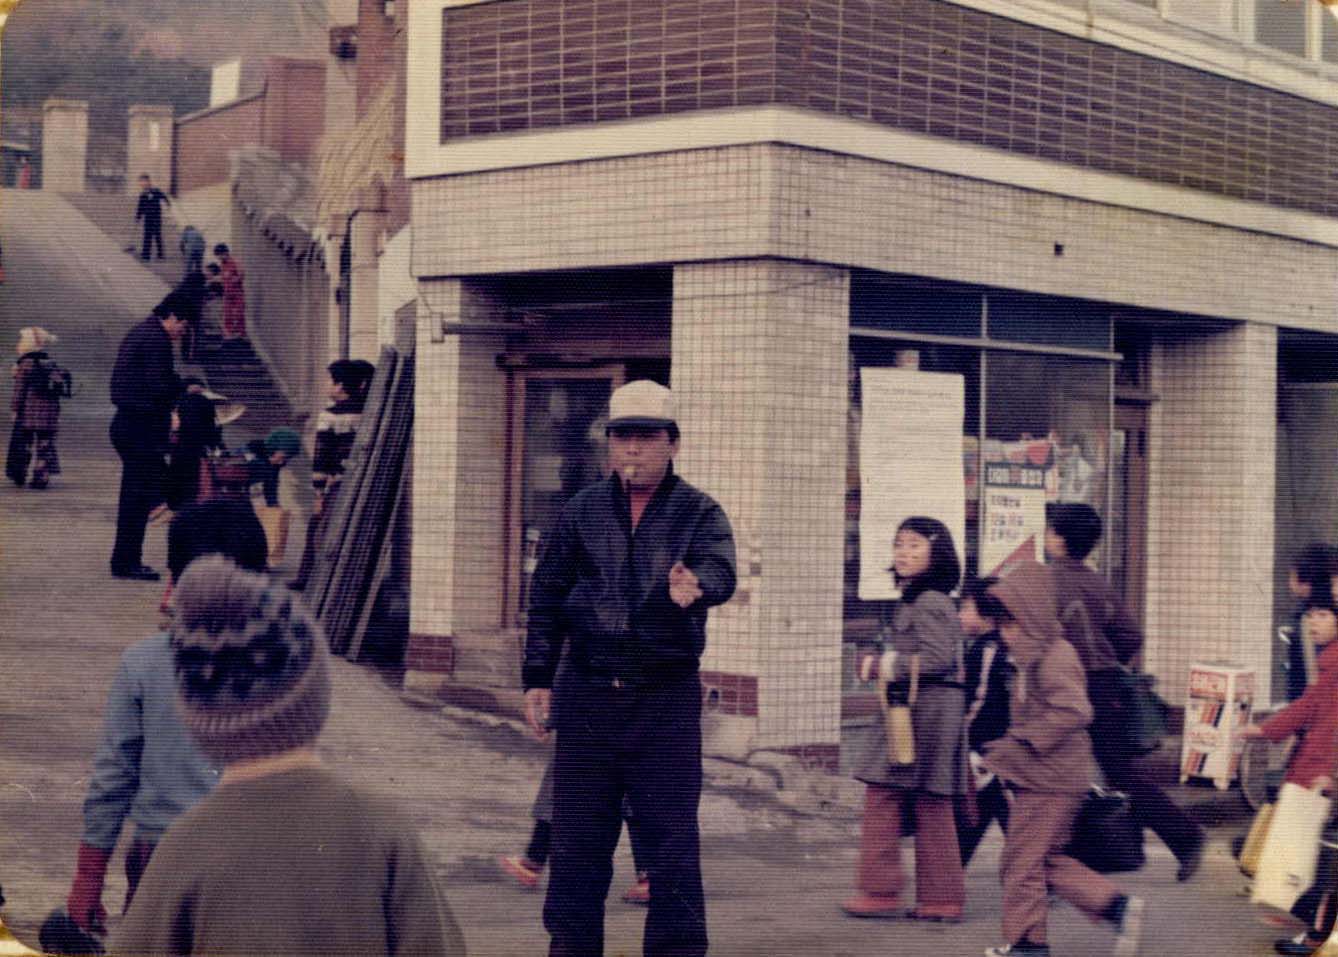 1979년 수원 남창국민학교 혼잡한 교문 앞 도로에서 날이면 날마다 본교 어린이들의 안전을 위해 교통정리에 힘쓰시는 새마을 지도자 아저씨